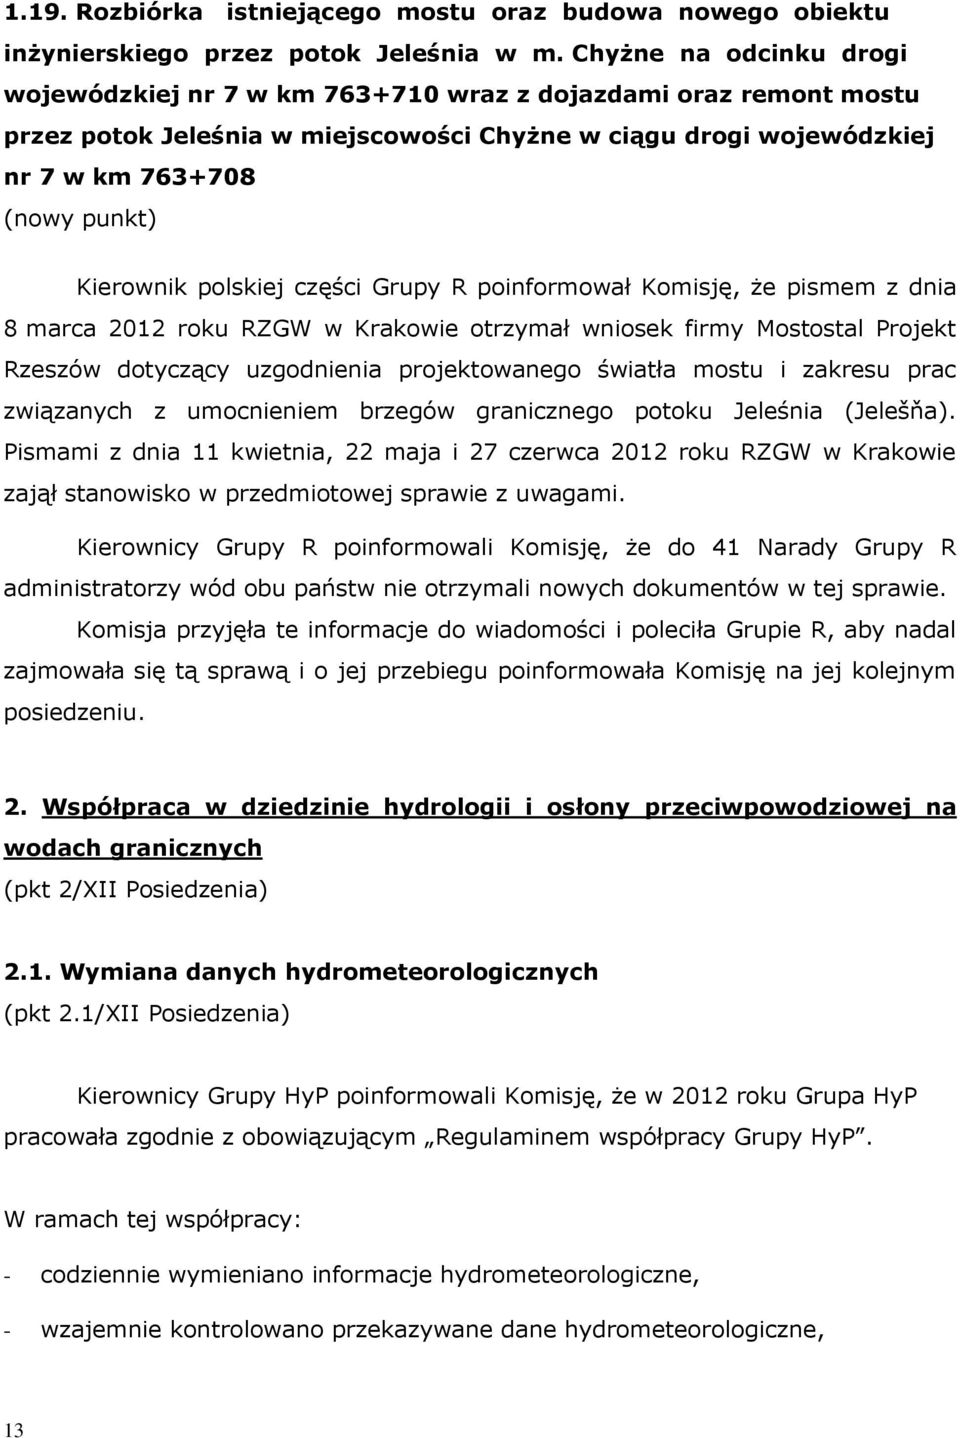 Kierownik polskiej części Grupy R poinformował Komisję, że pismem z dnia 8 marca 2012 roku RZGW w Krakowie otrzymał wniosek firmy Mostostal Projekt Rzeszów dotyczący uzgodnienia projektowanego